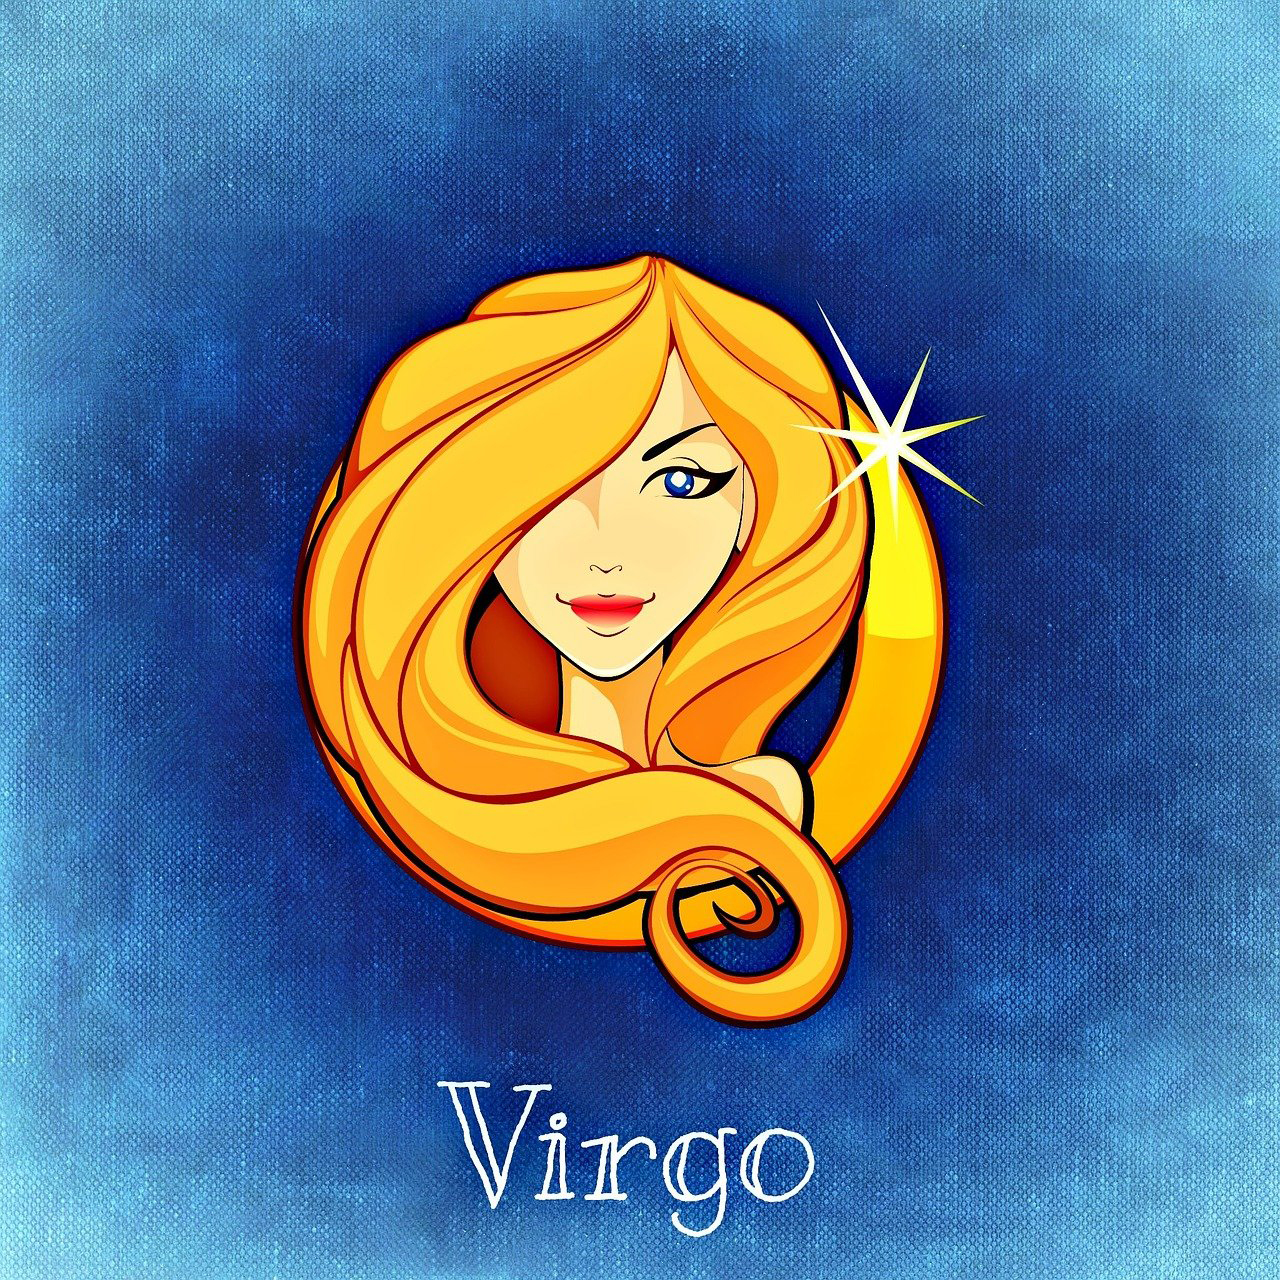 September 1 zodiac sign is the Virgo